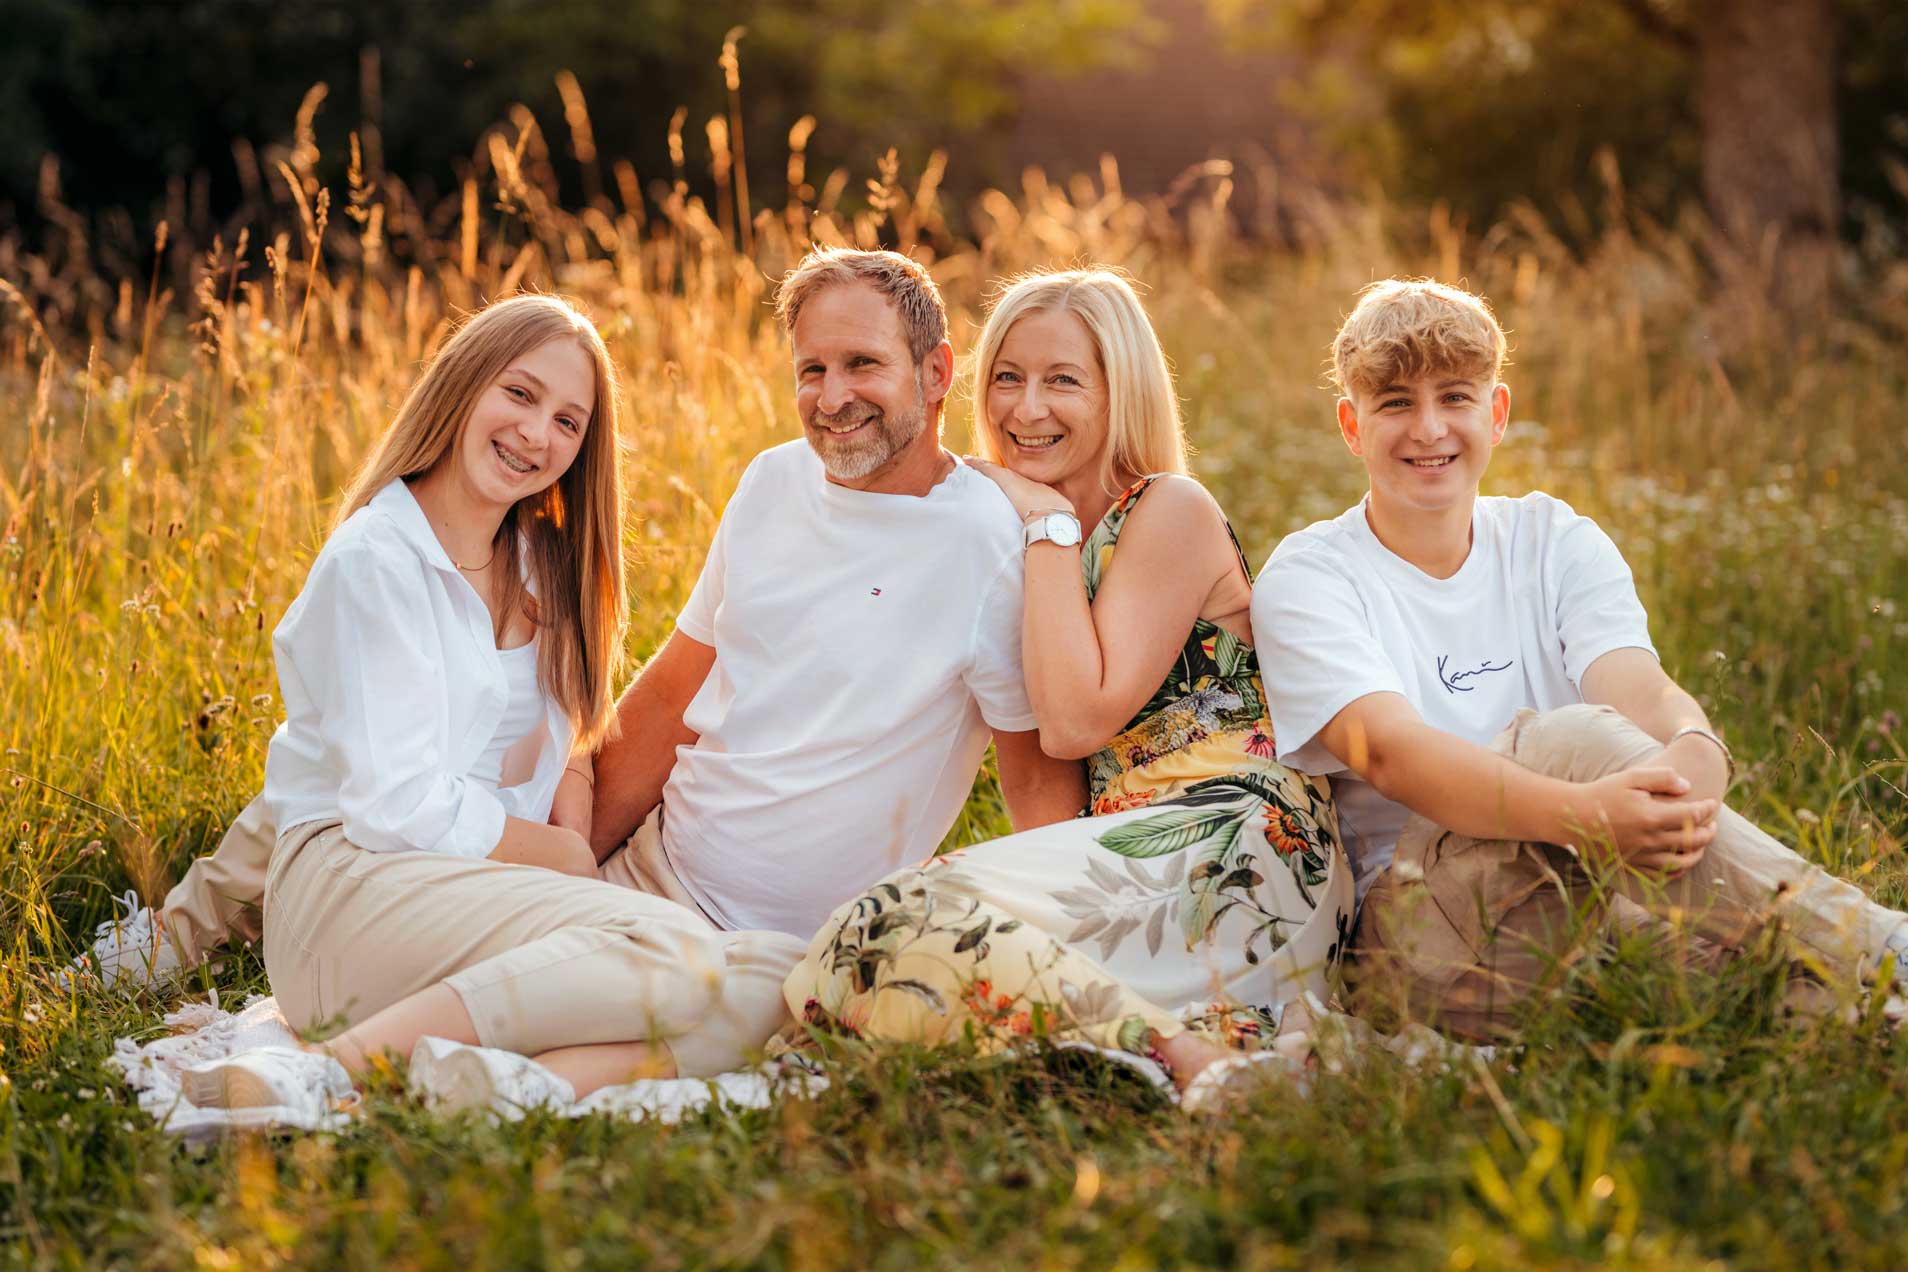 Familienfoto-Familie-Fotoshooting-Amstetten-Melk-Scheibbs-Waidhofen-Ybbs-Pöchlarn-Loosdorf-Fotografin-Daniela-Führer